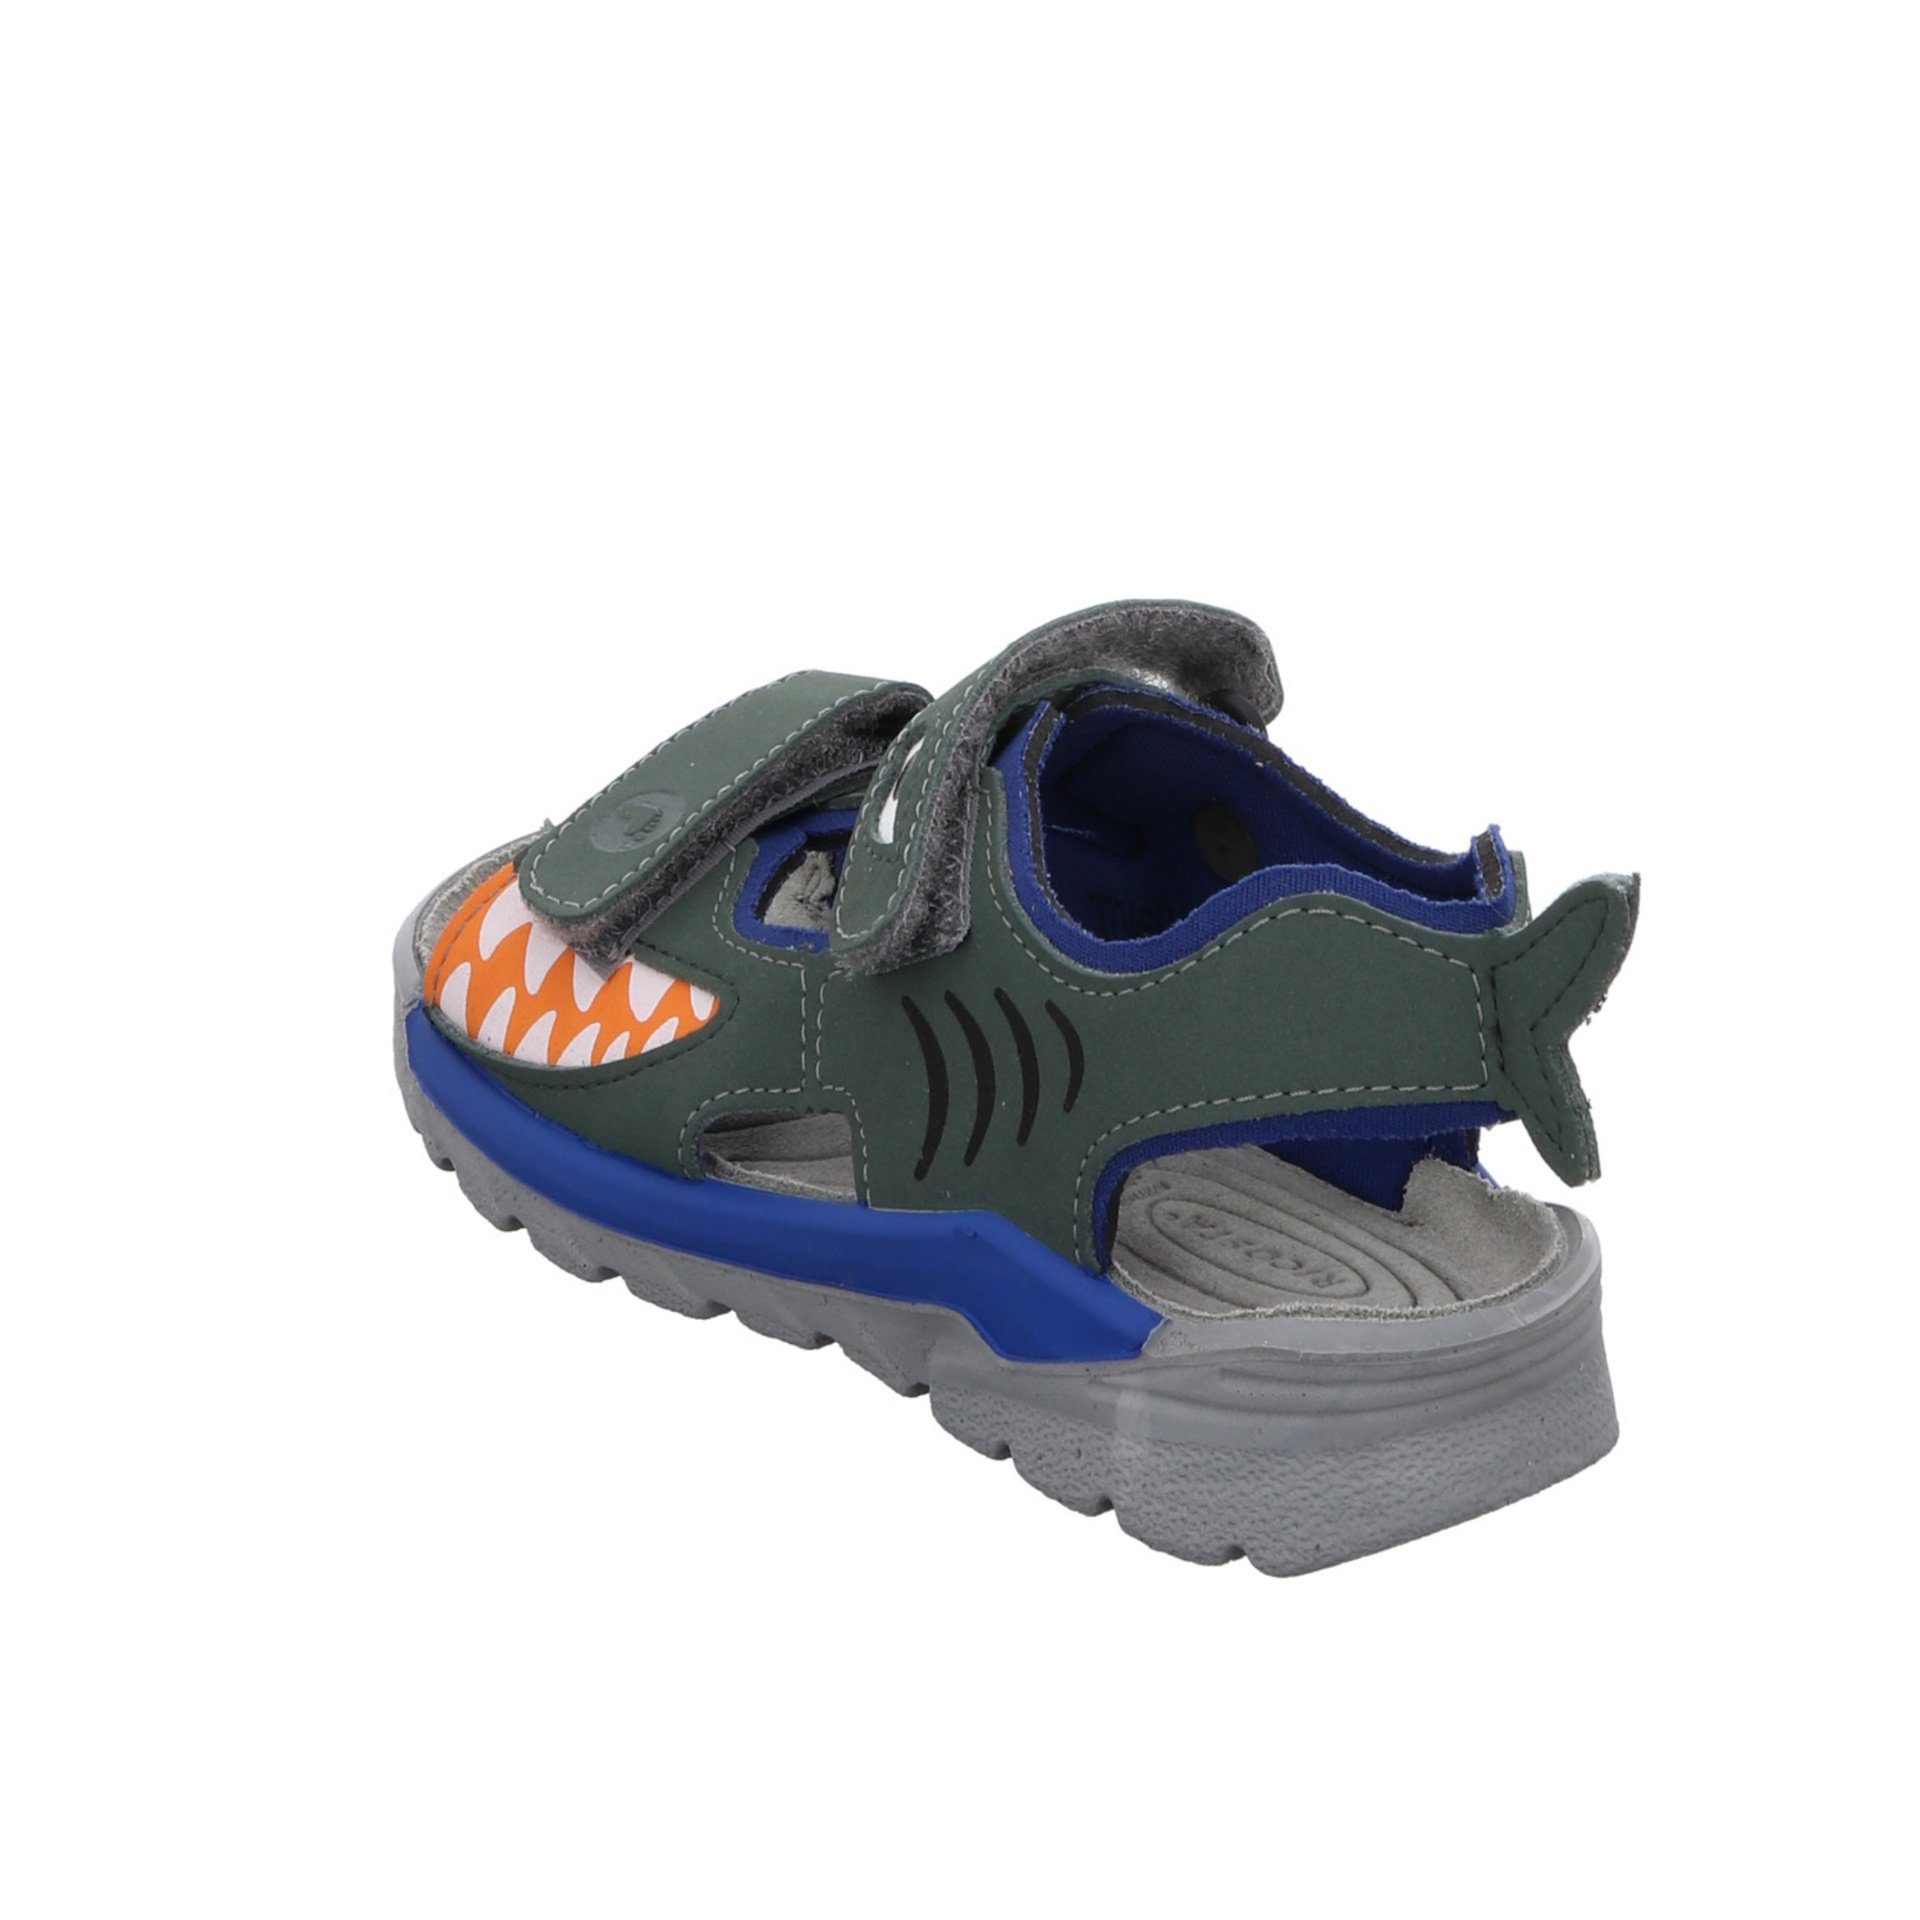 Sandalen Sandale Sandale Textil Kinderschuhe Shark Jungen Ricosta Schuhe grün